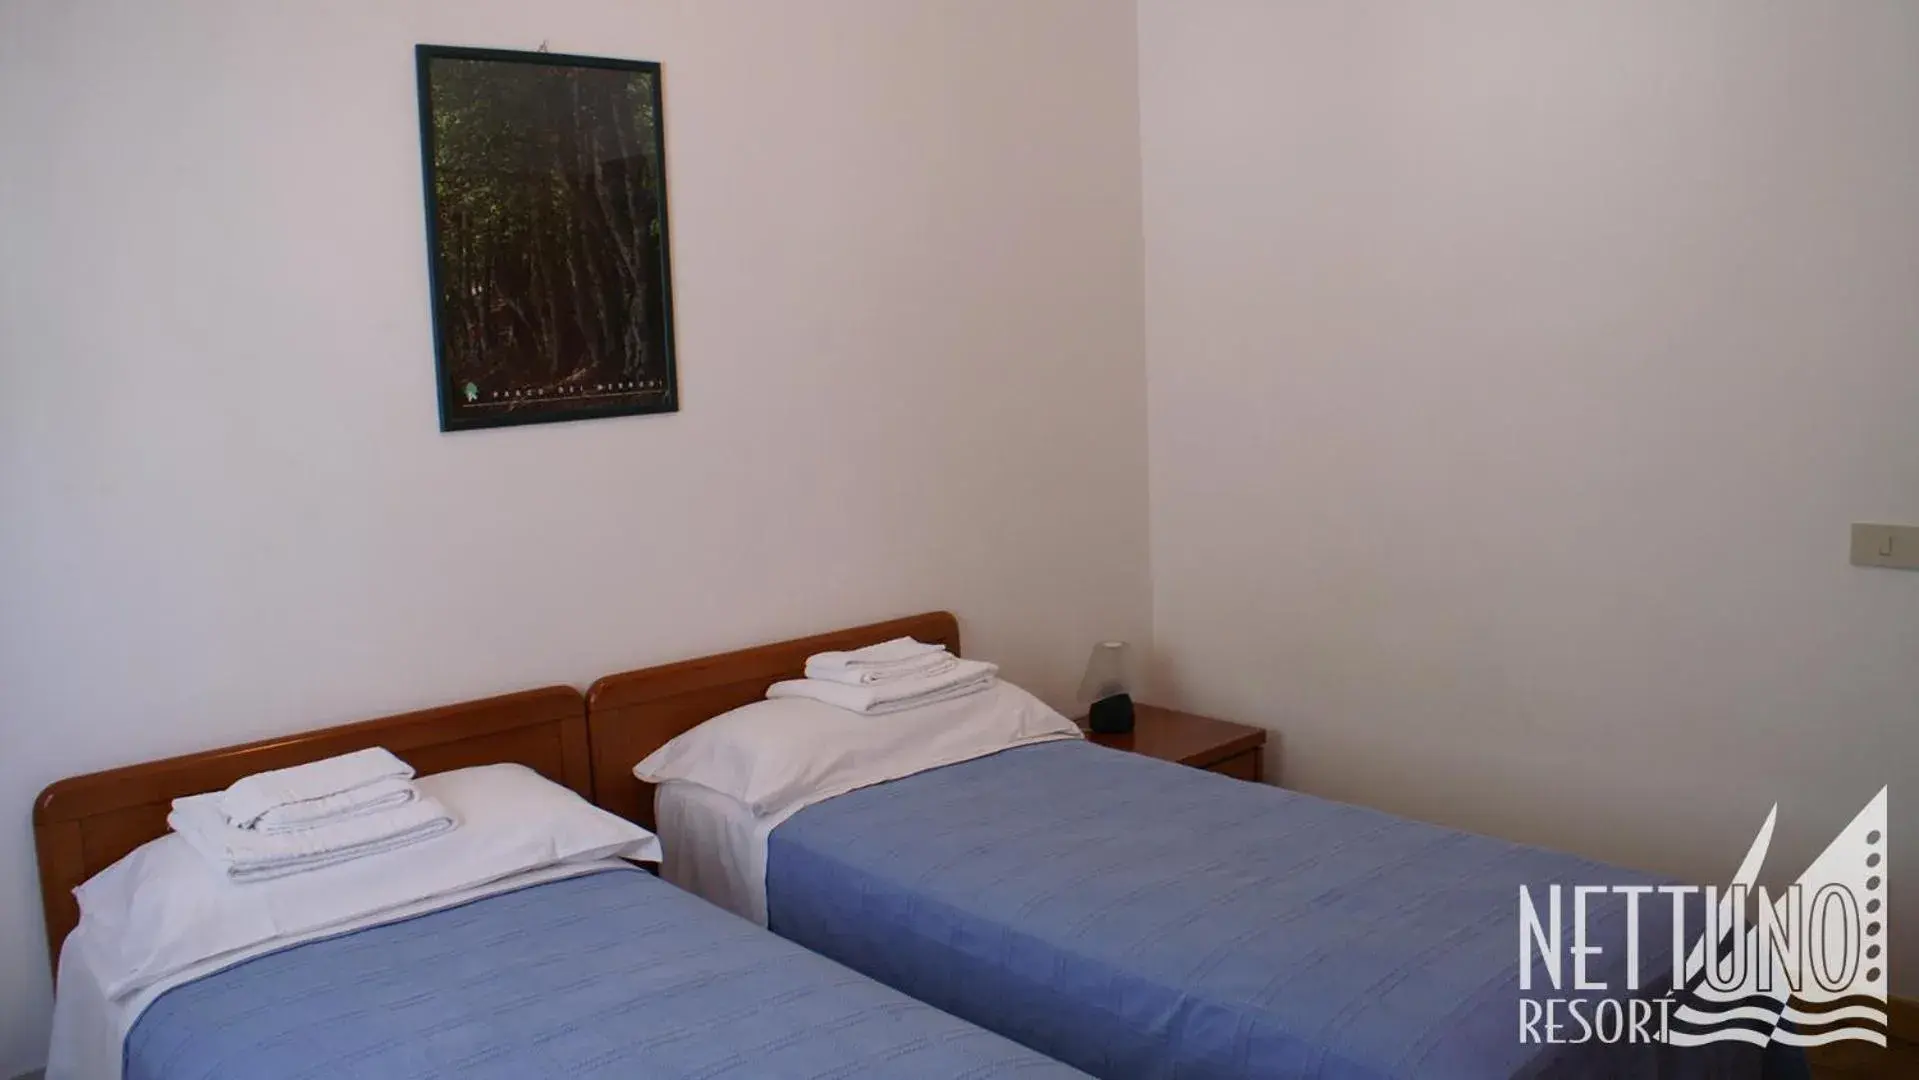 Bedroom, Bed in Nettuno Resort